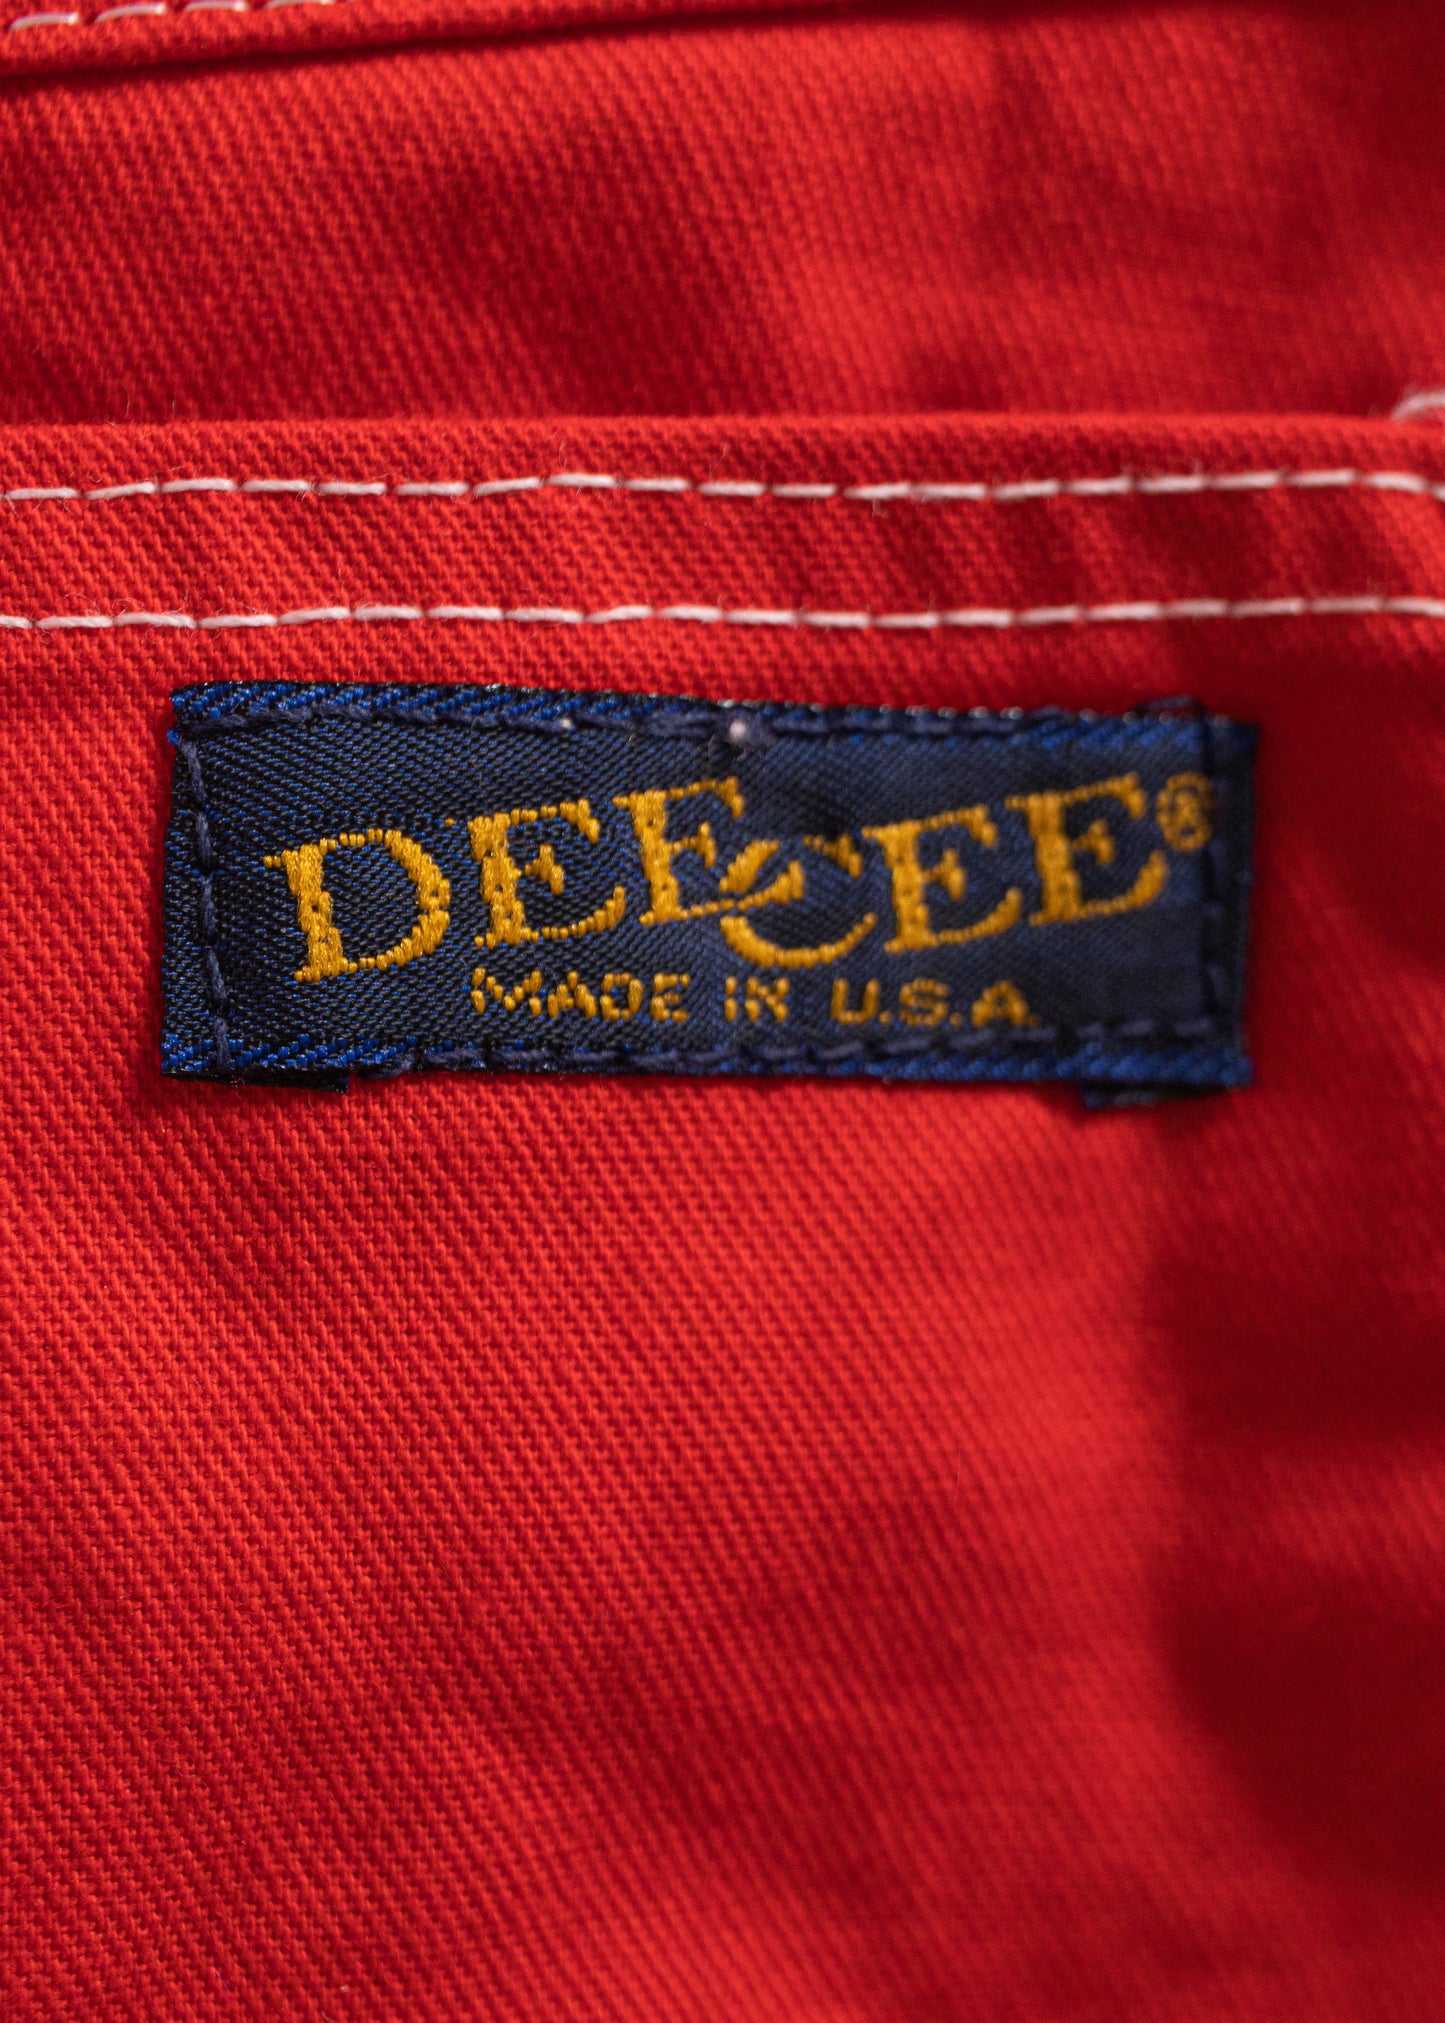 1980s Dee Cee Deadstock Midi Skirt Size Women's 26 Men's 30